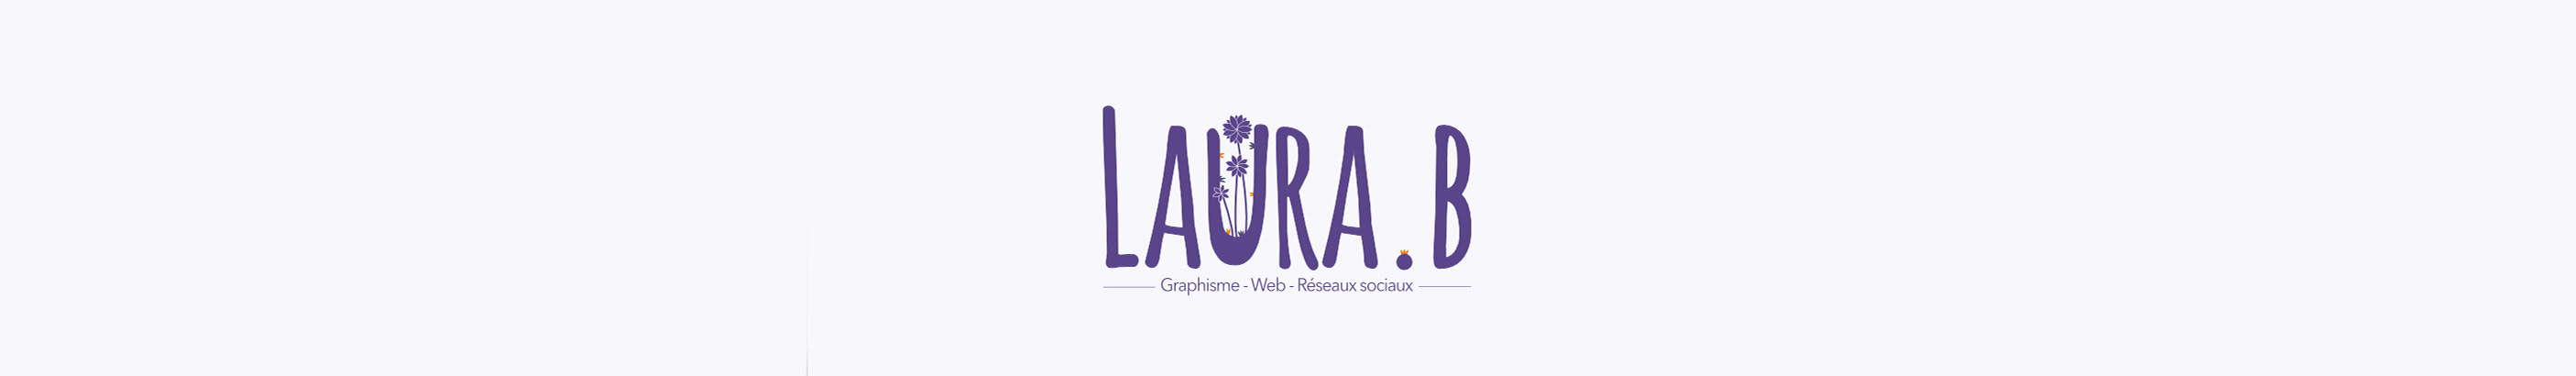 Laura Béthencourt's profile banner